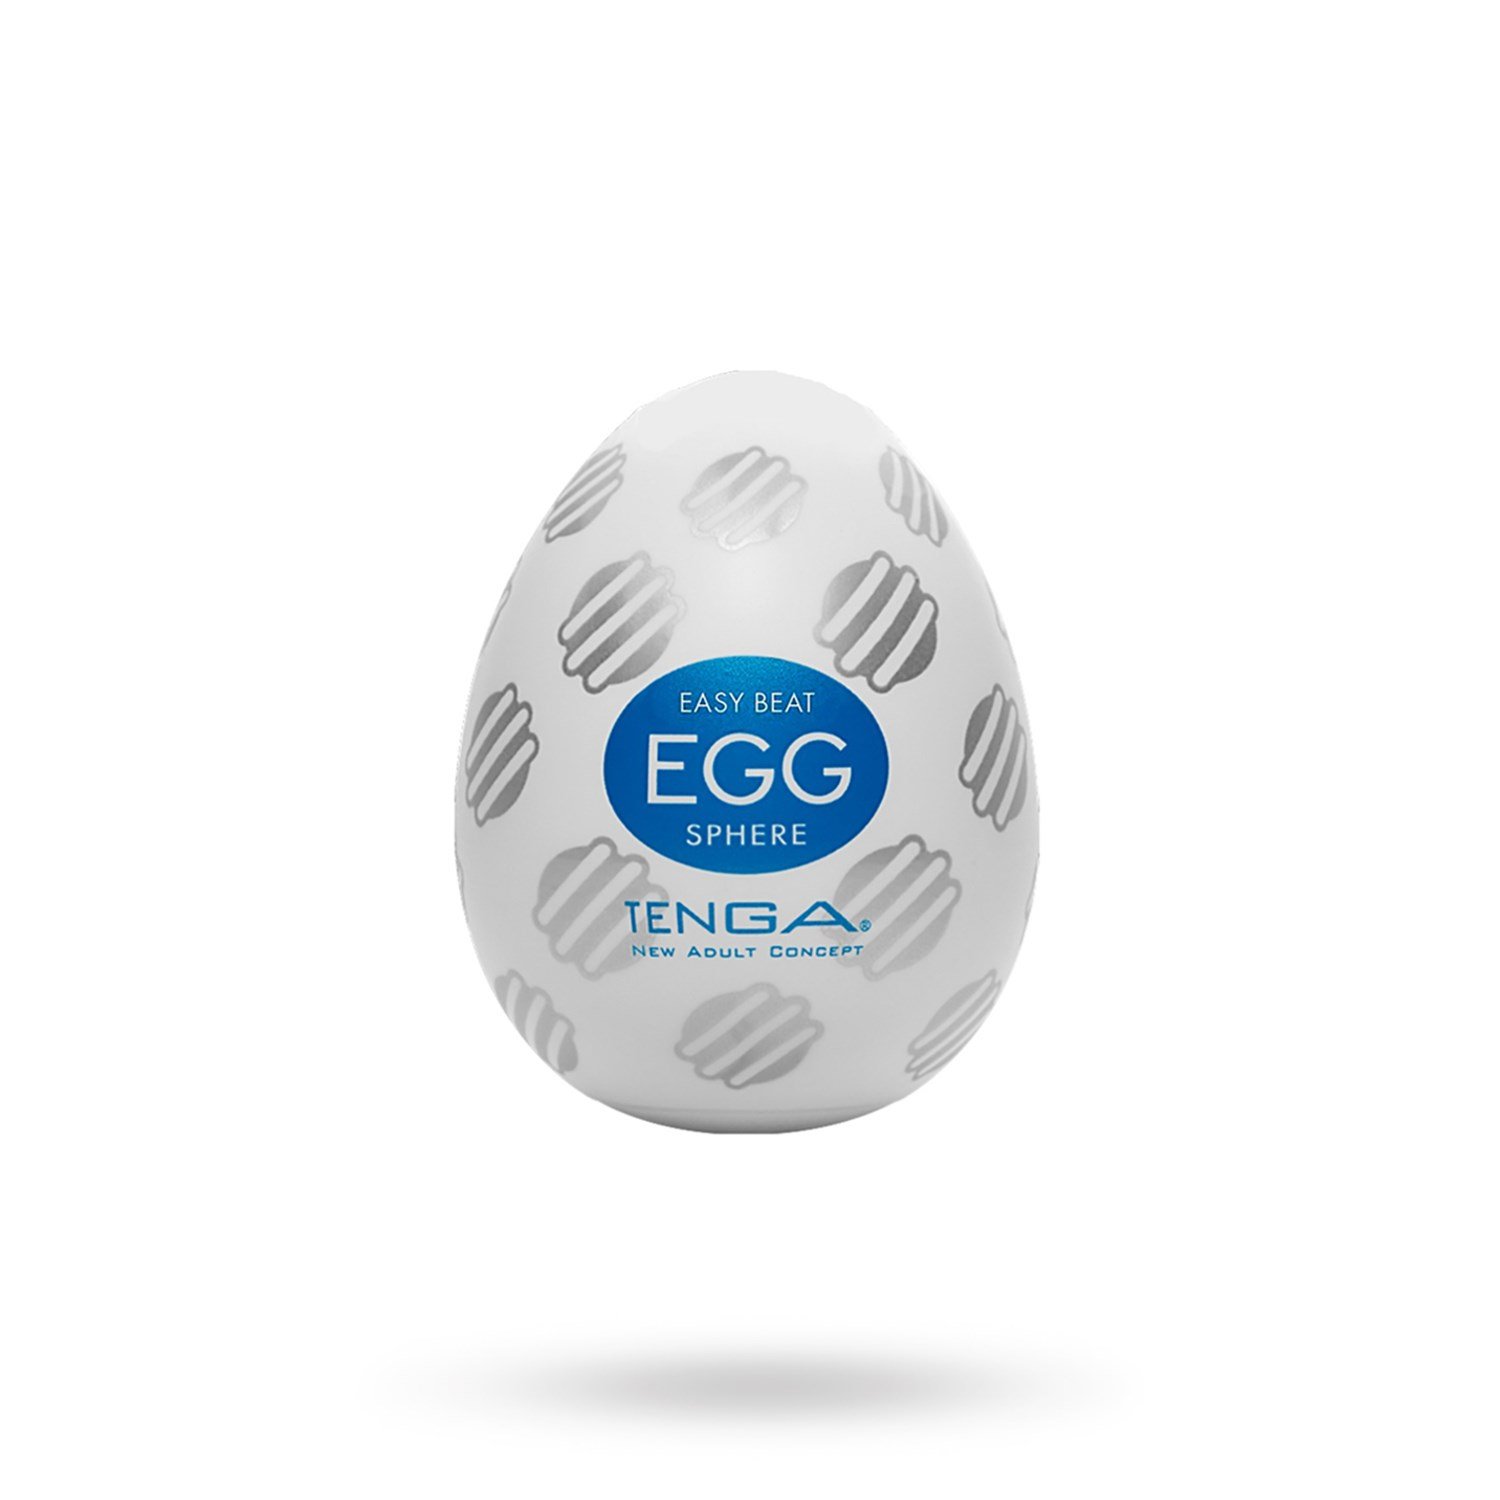 Tenga Egg - Sphere